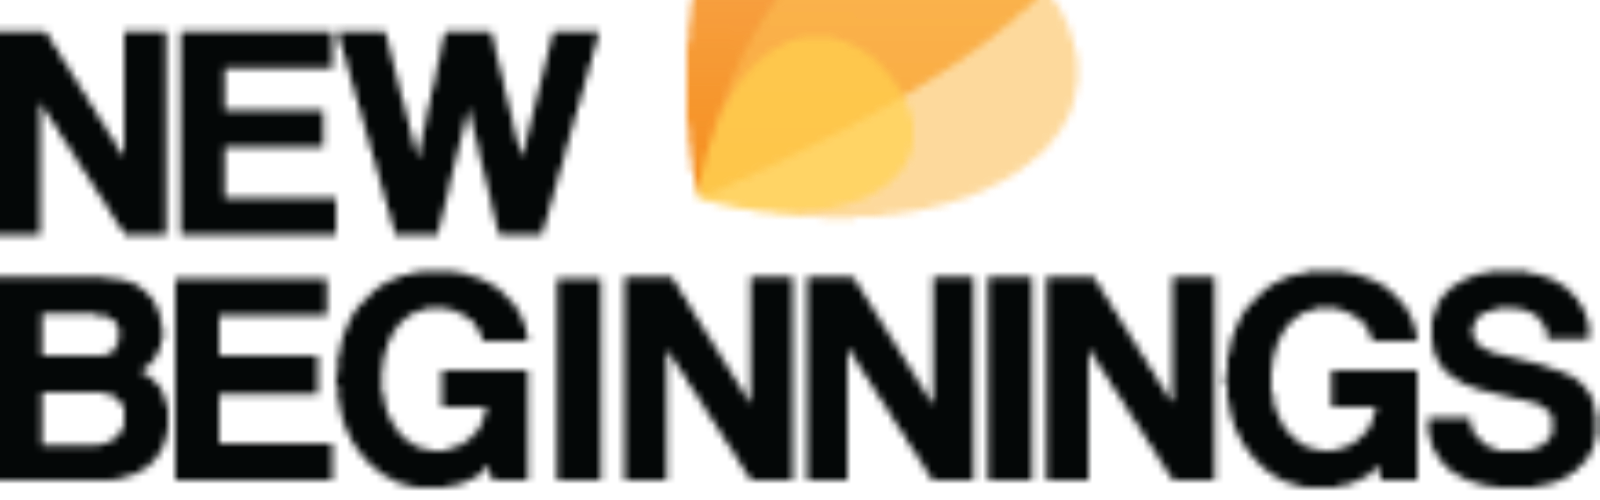 logo for new beginnings